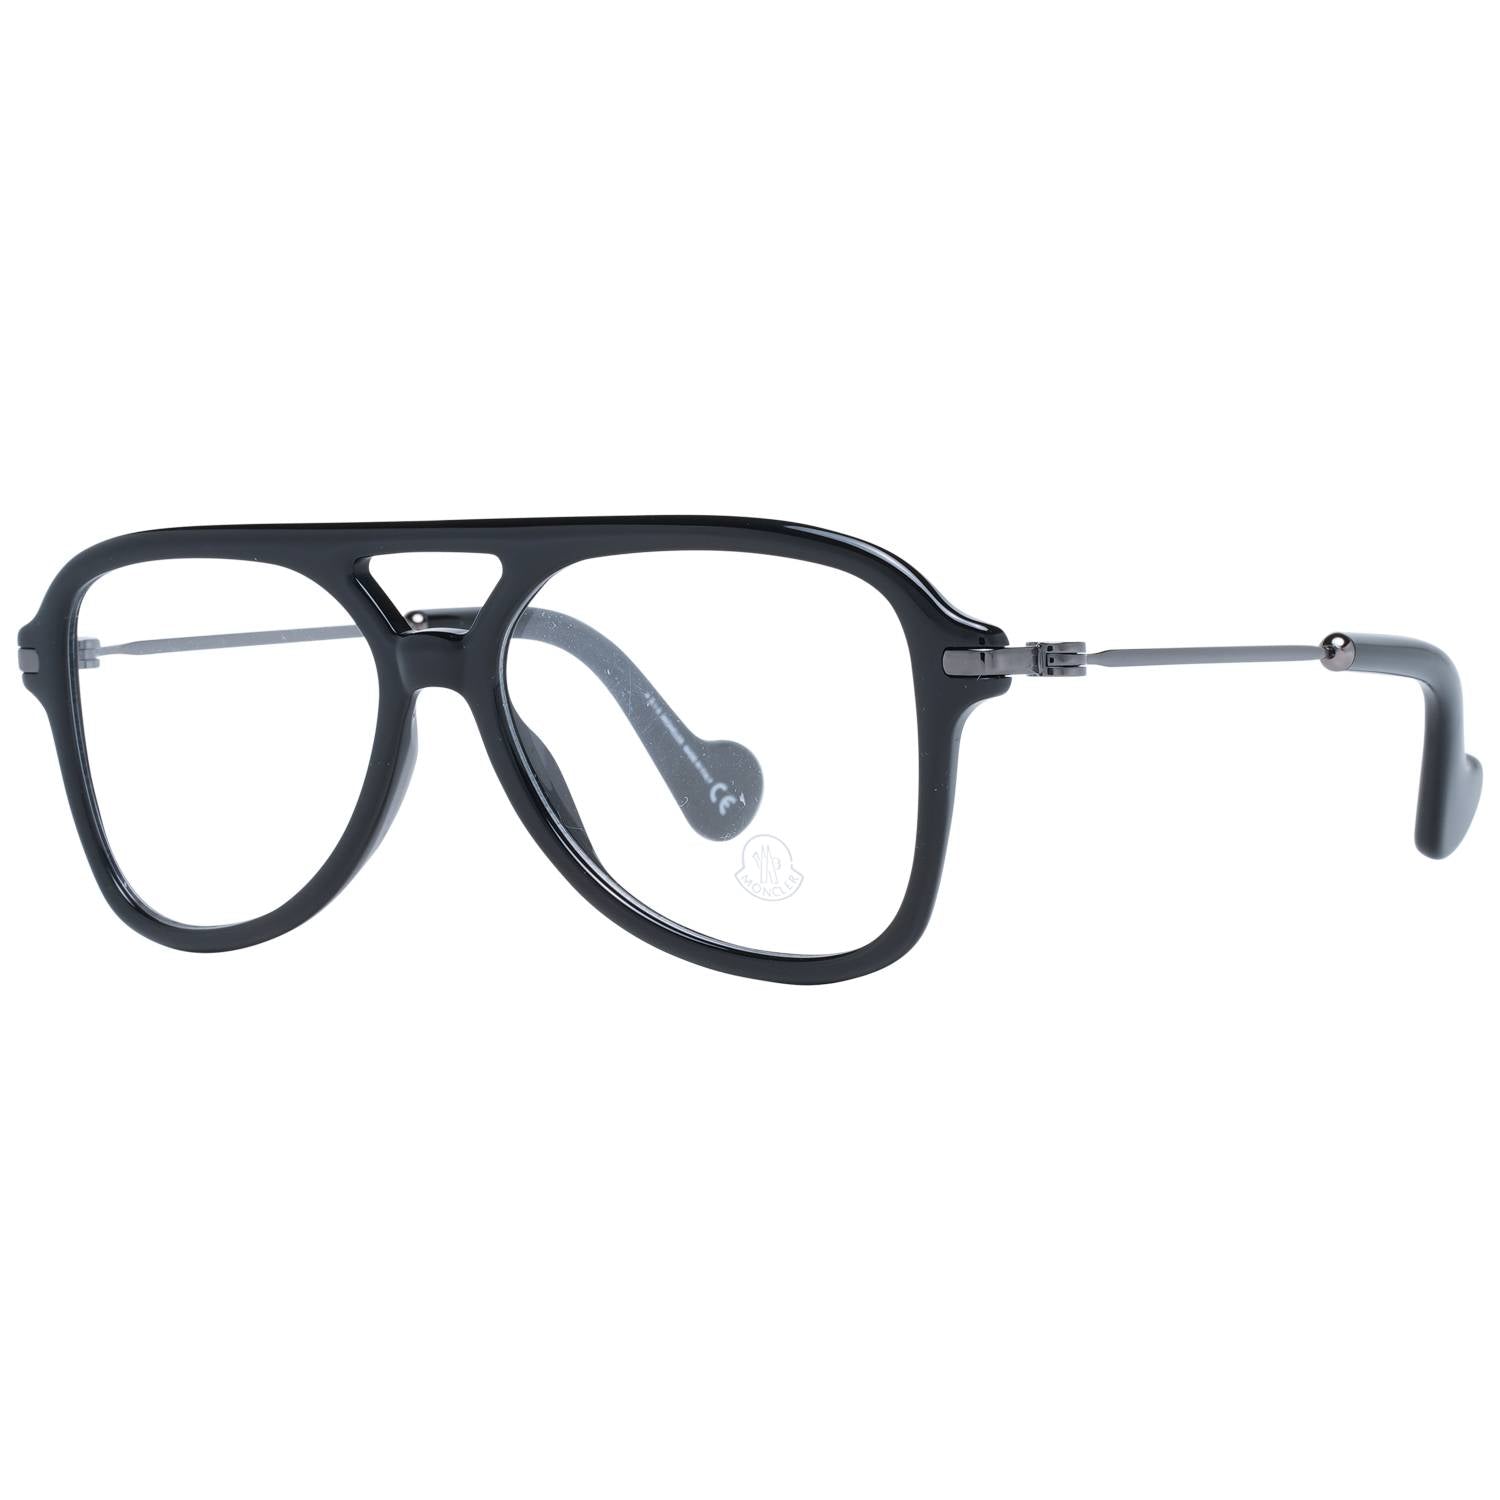 Moncler Eyeglasses Moncler Glasses Frames ML5081 001 56mm Eyeglasses Eyewear UK USA Australia 